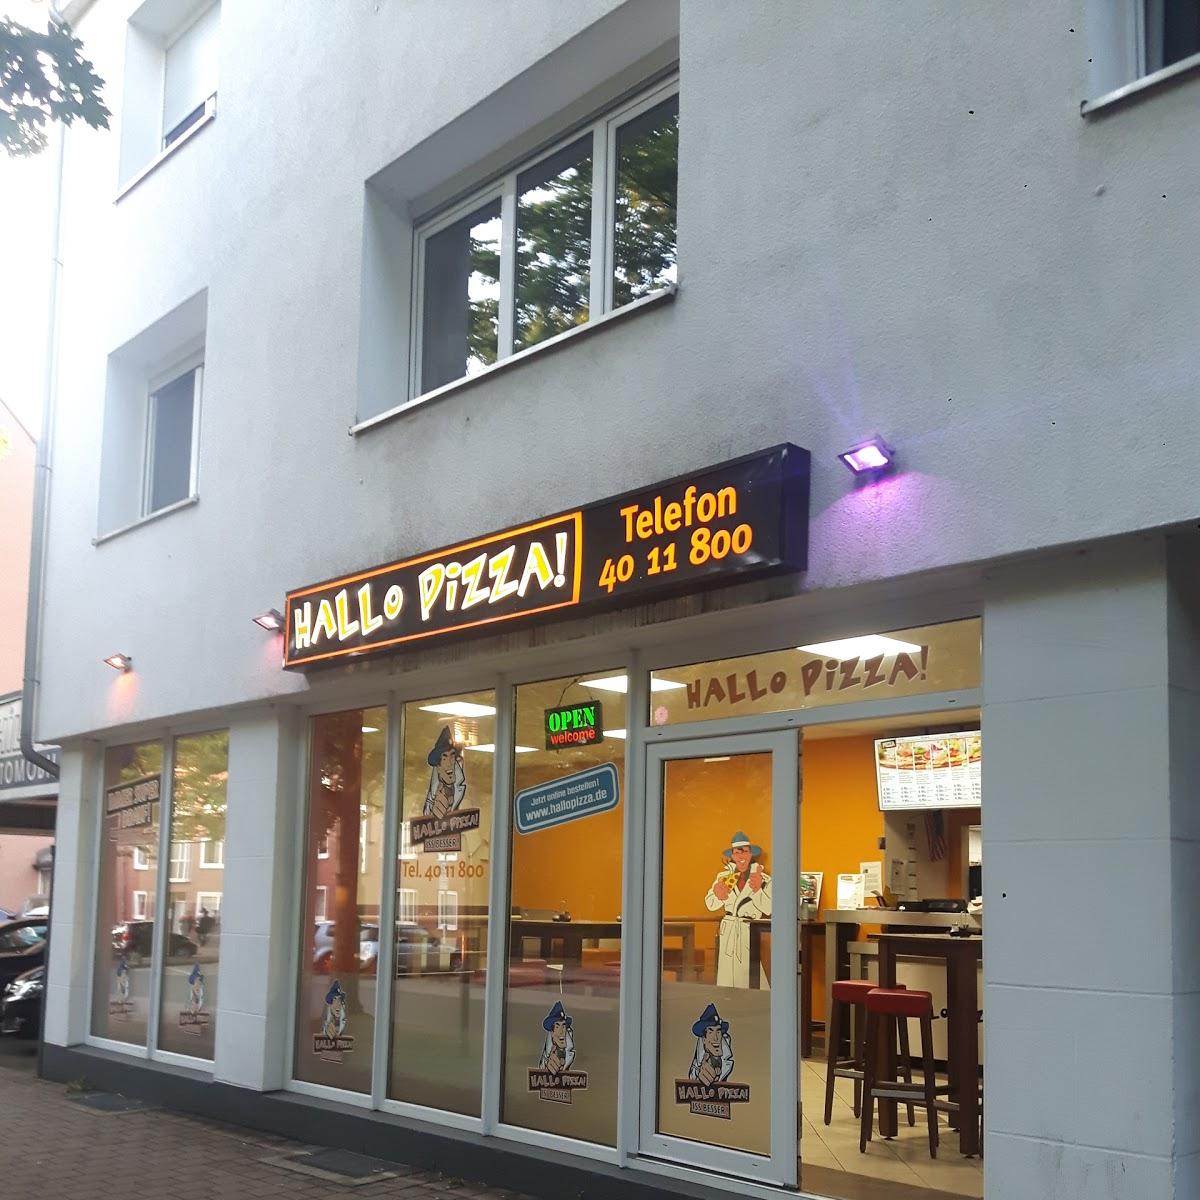 Restaurant "Hallo Pizza" in Gladbeck